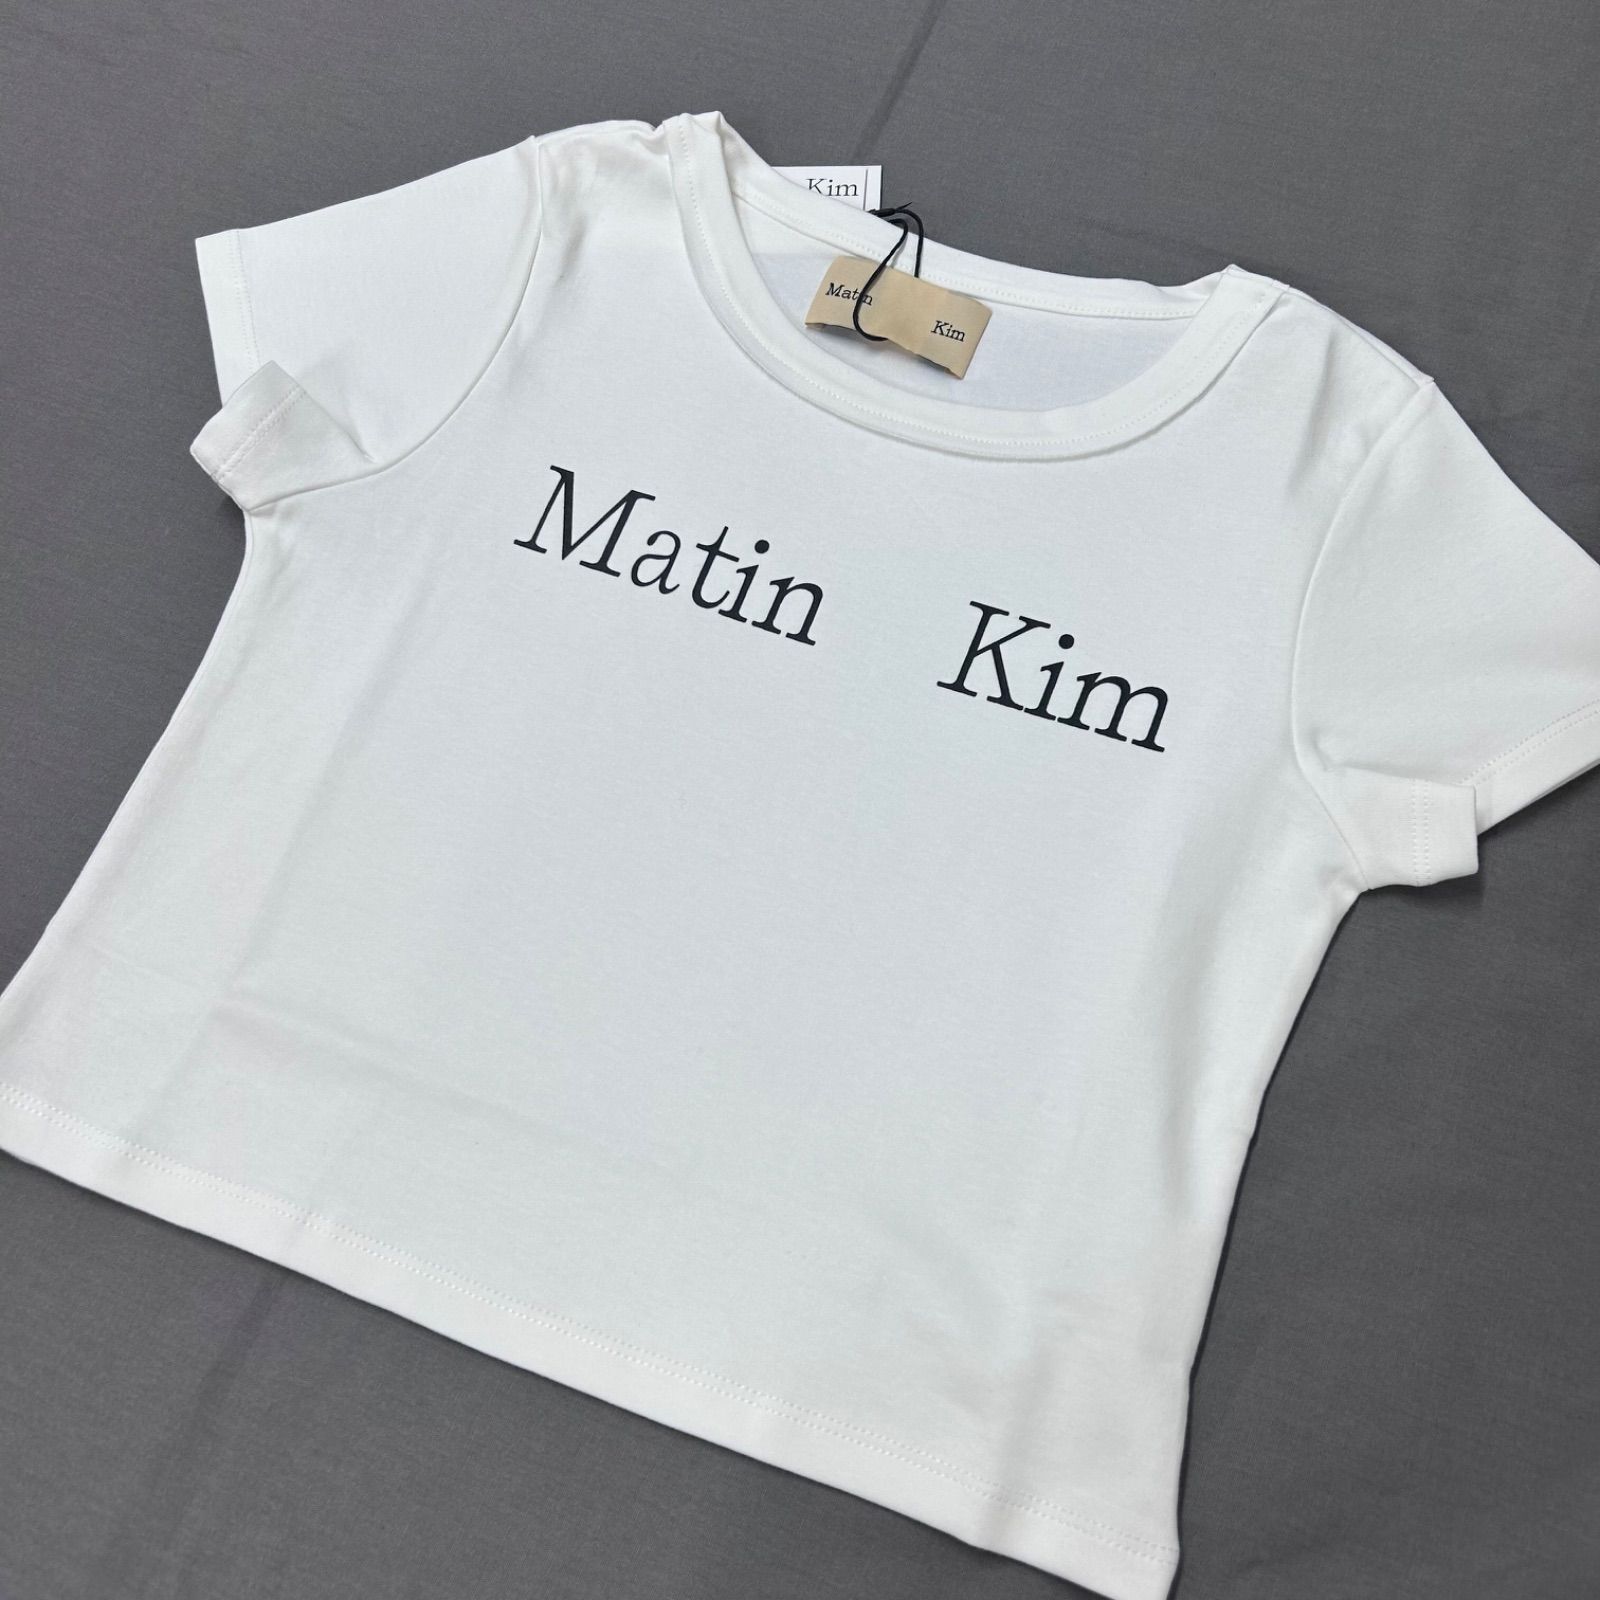 マーティンキム レディース Tシャツ 白 ホワイト 半袖 韓国 韓国 